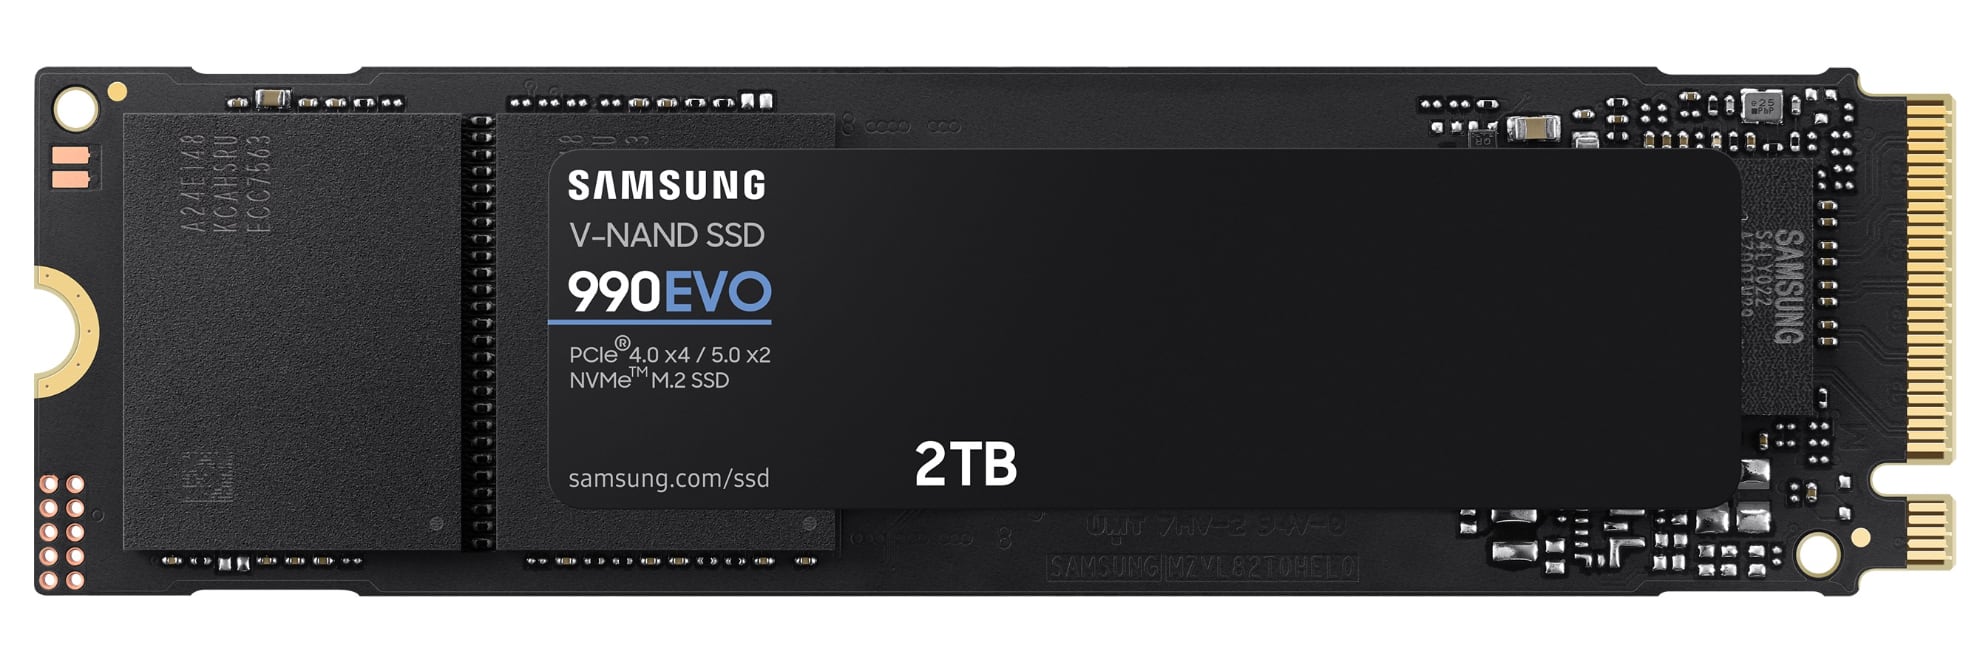 Samsung annoncerer højhastigheds-SSD 990 EVO, den vil koste $210 for 2 TB-2